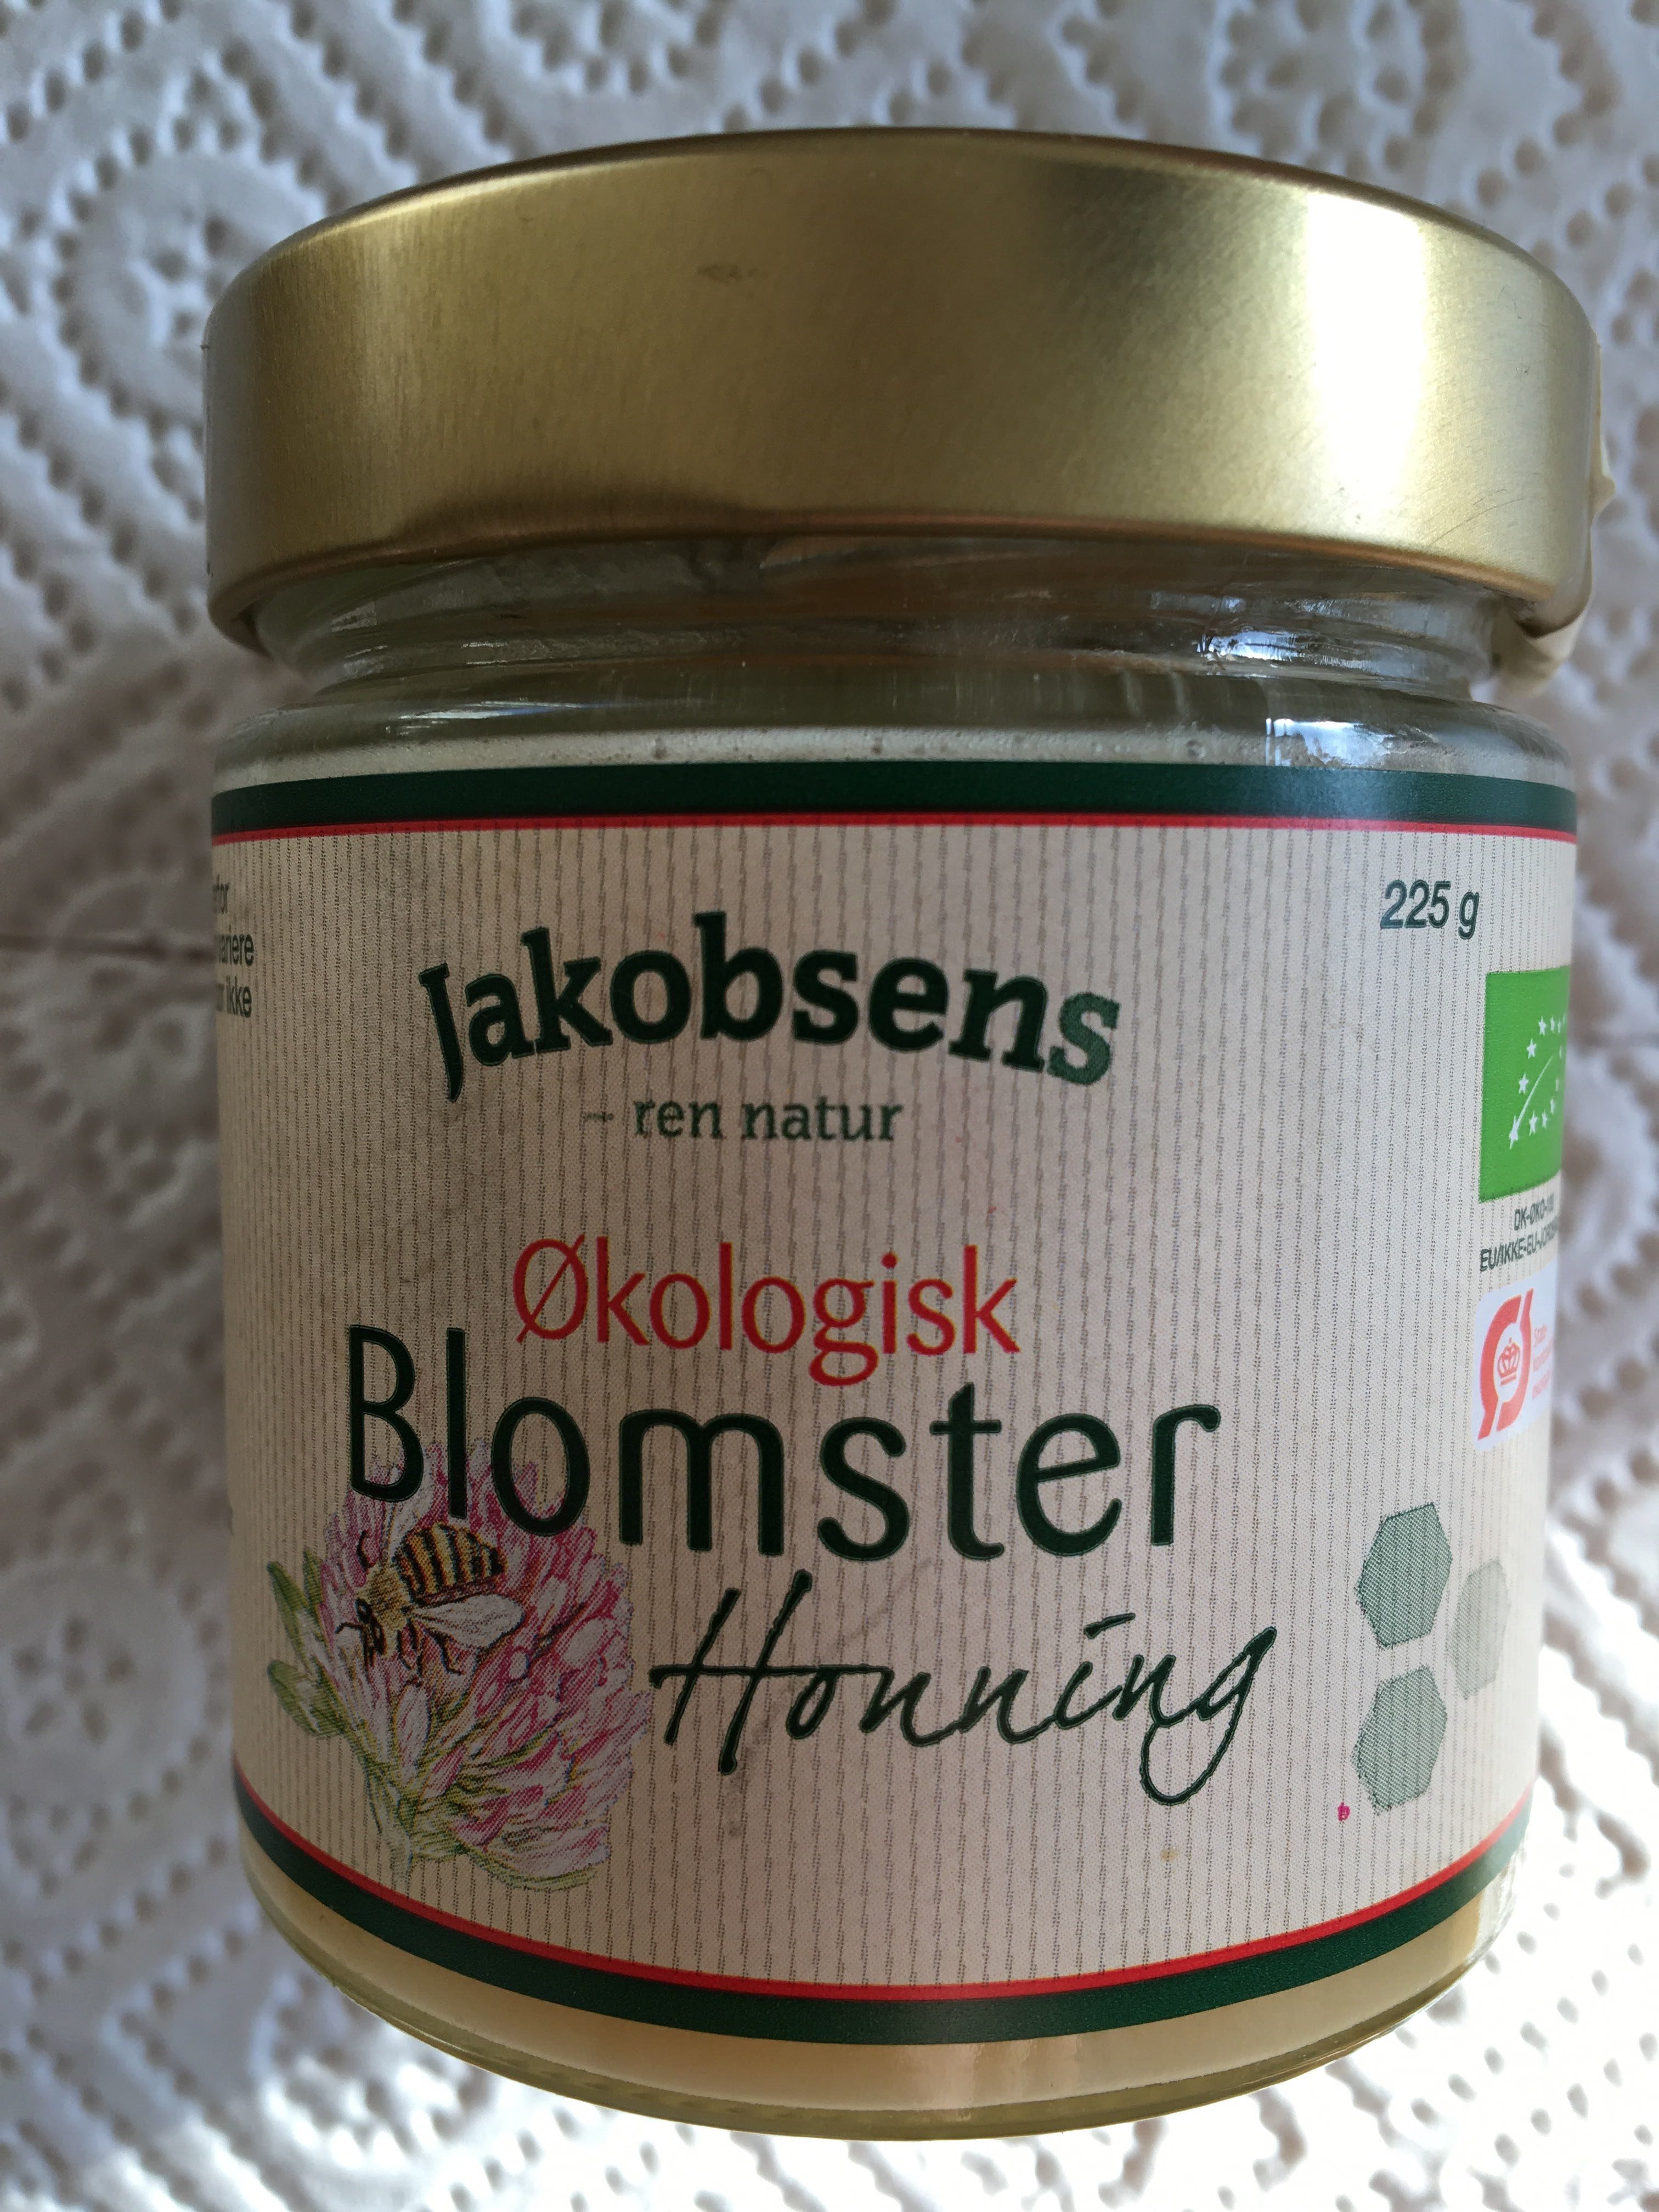 Blomster Honning - Produkt